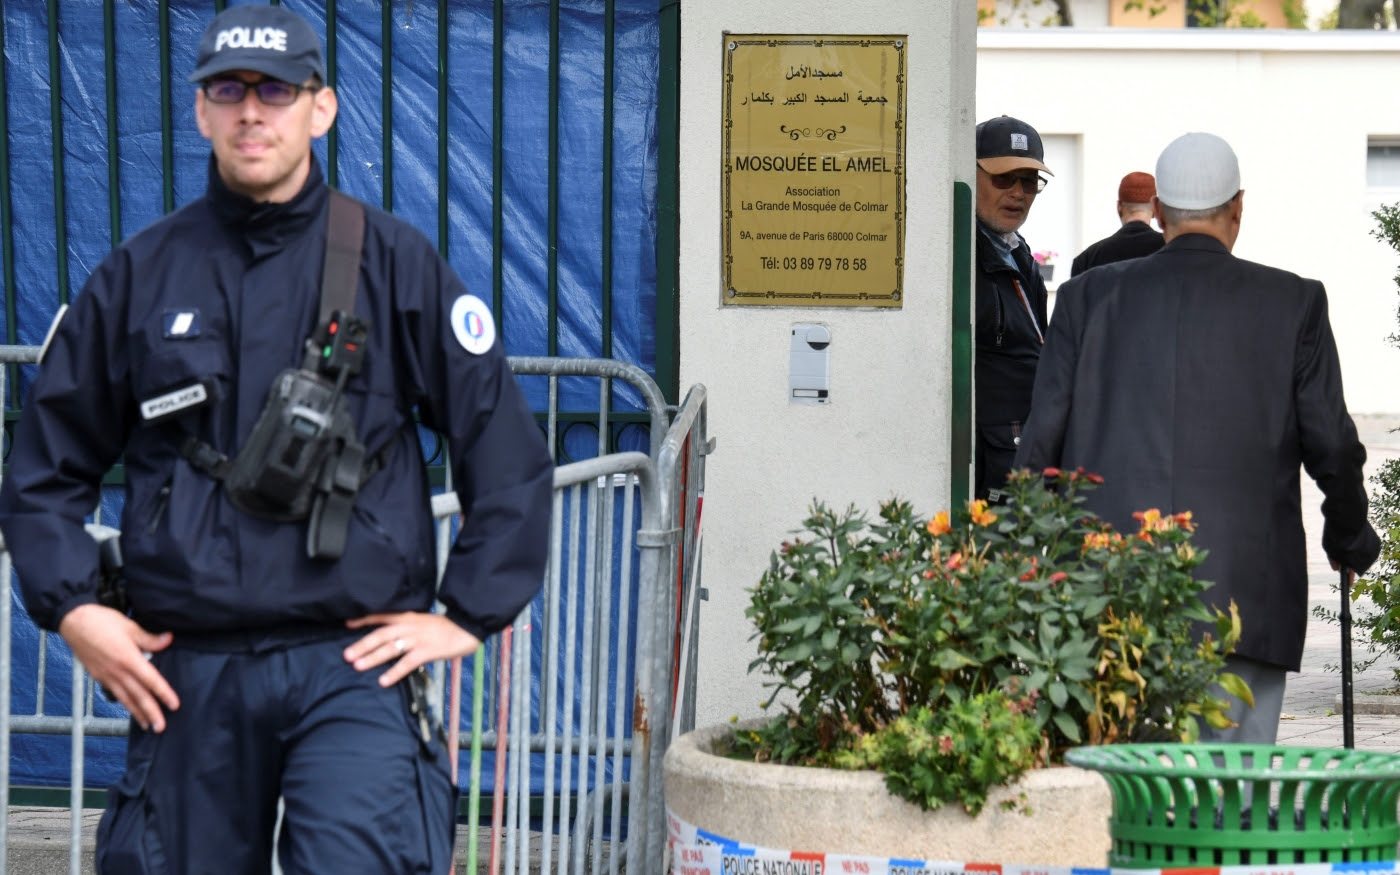 Des fidèles arrivent à la grande mosquée de Colmar, dans l’est de la France, où un policier monte la garde, le 22 septembre 2019 (AFP)